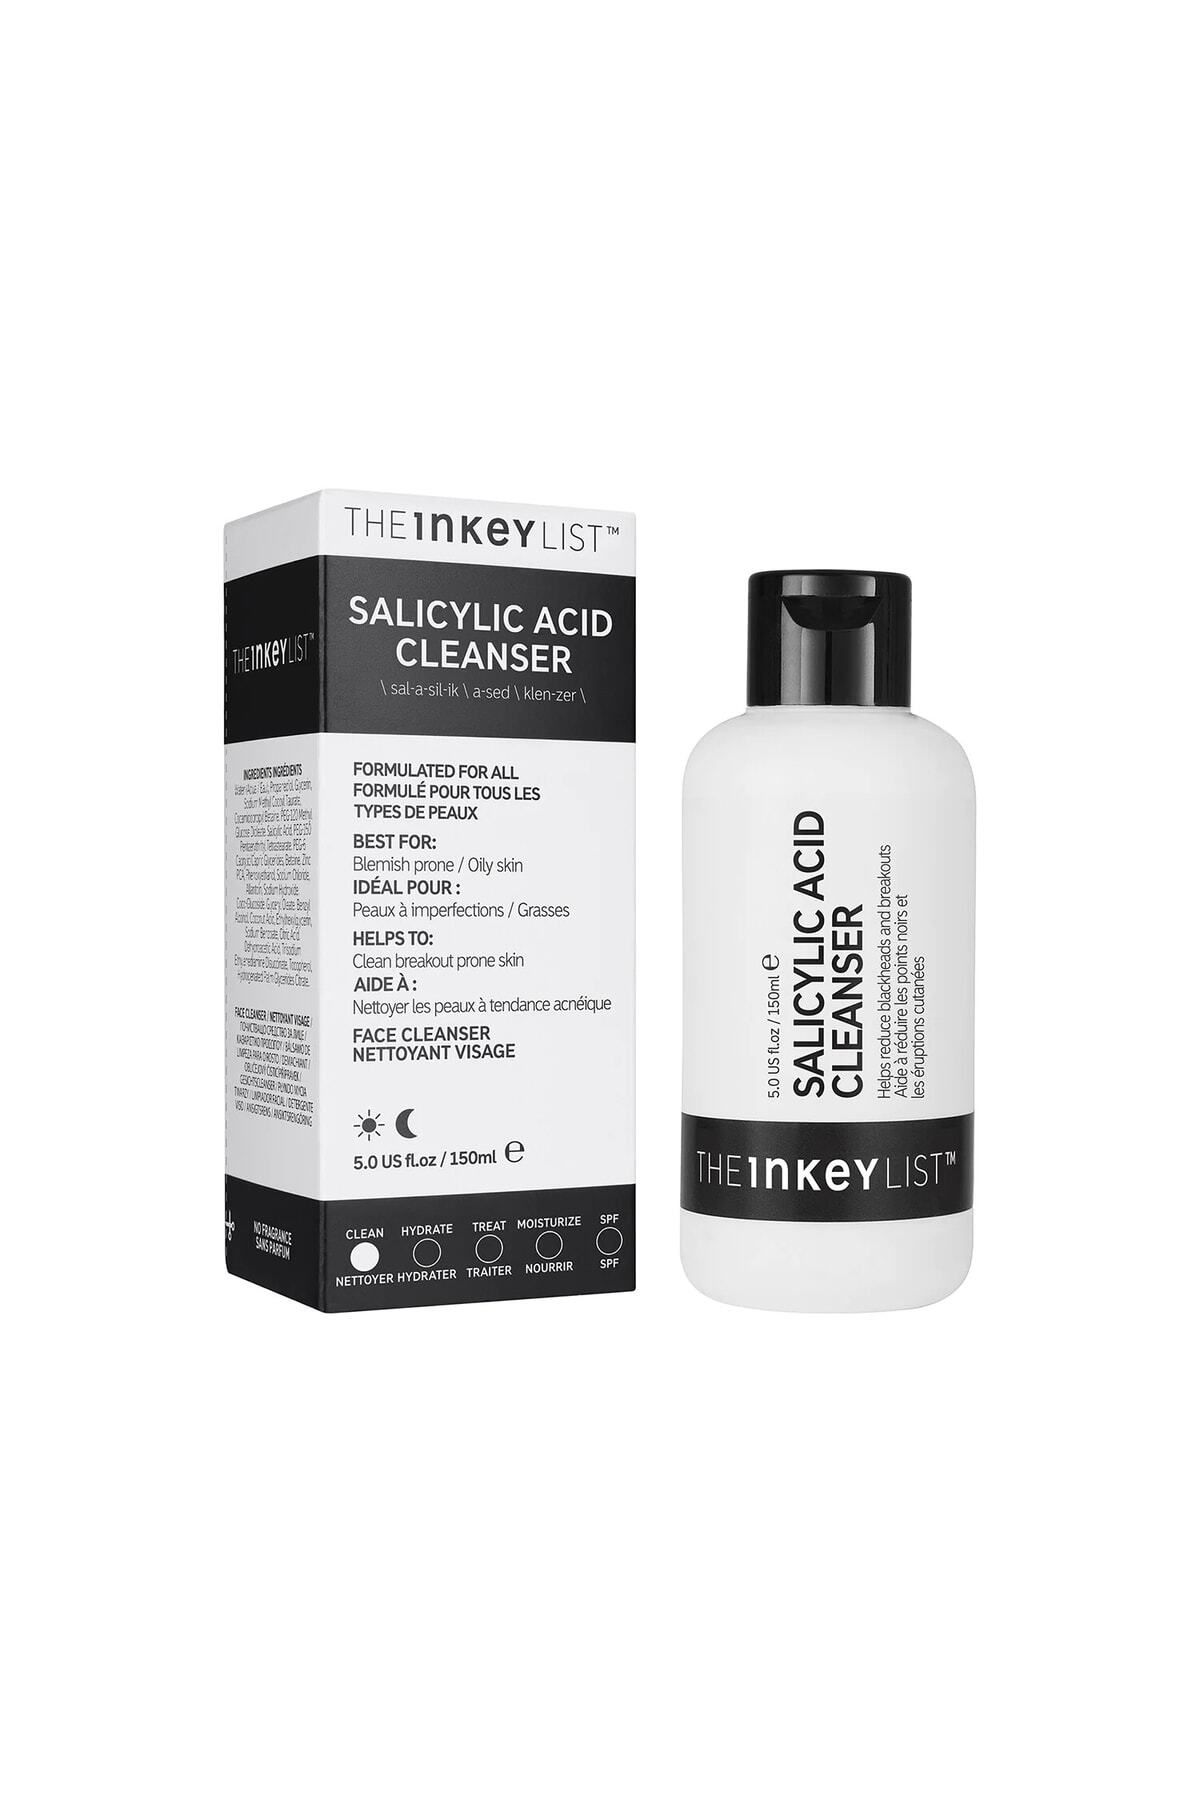 THE INKEY LIST Salicylic Acid Cleanser Anti Blackhead Salicylic Acid Facial Cleanser 150ml Renewal90